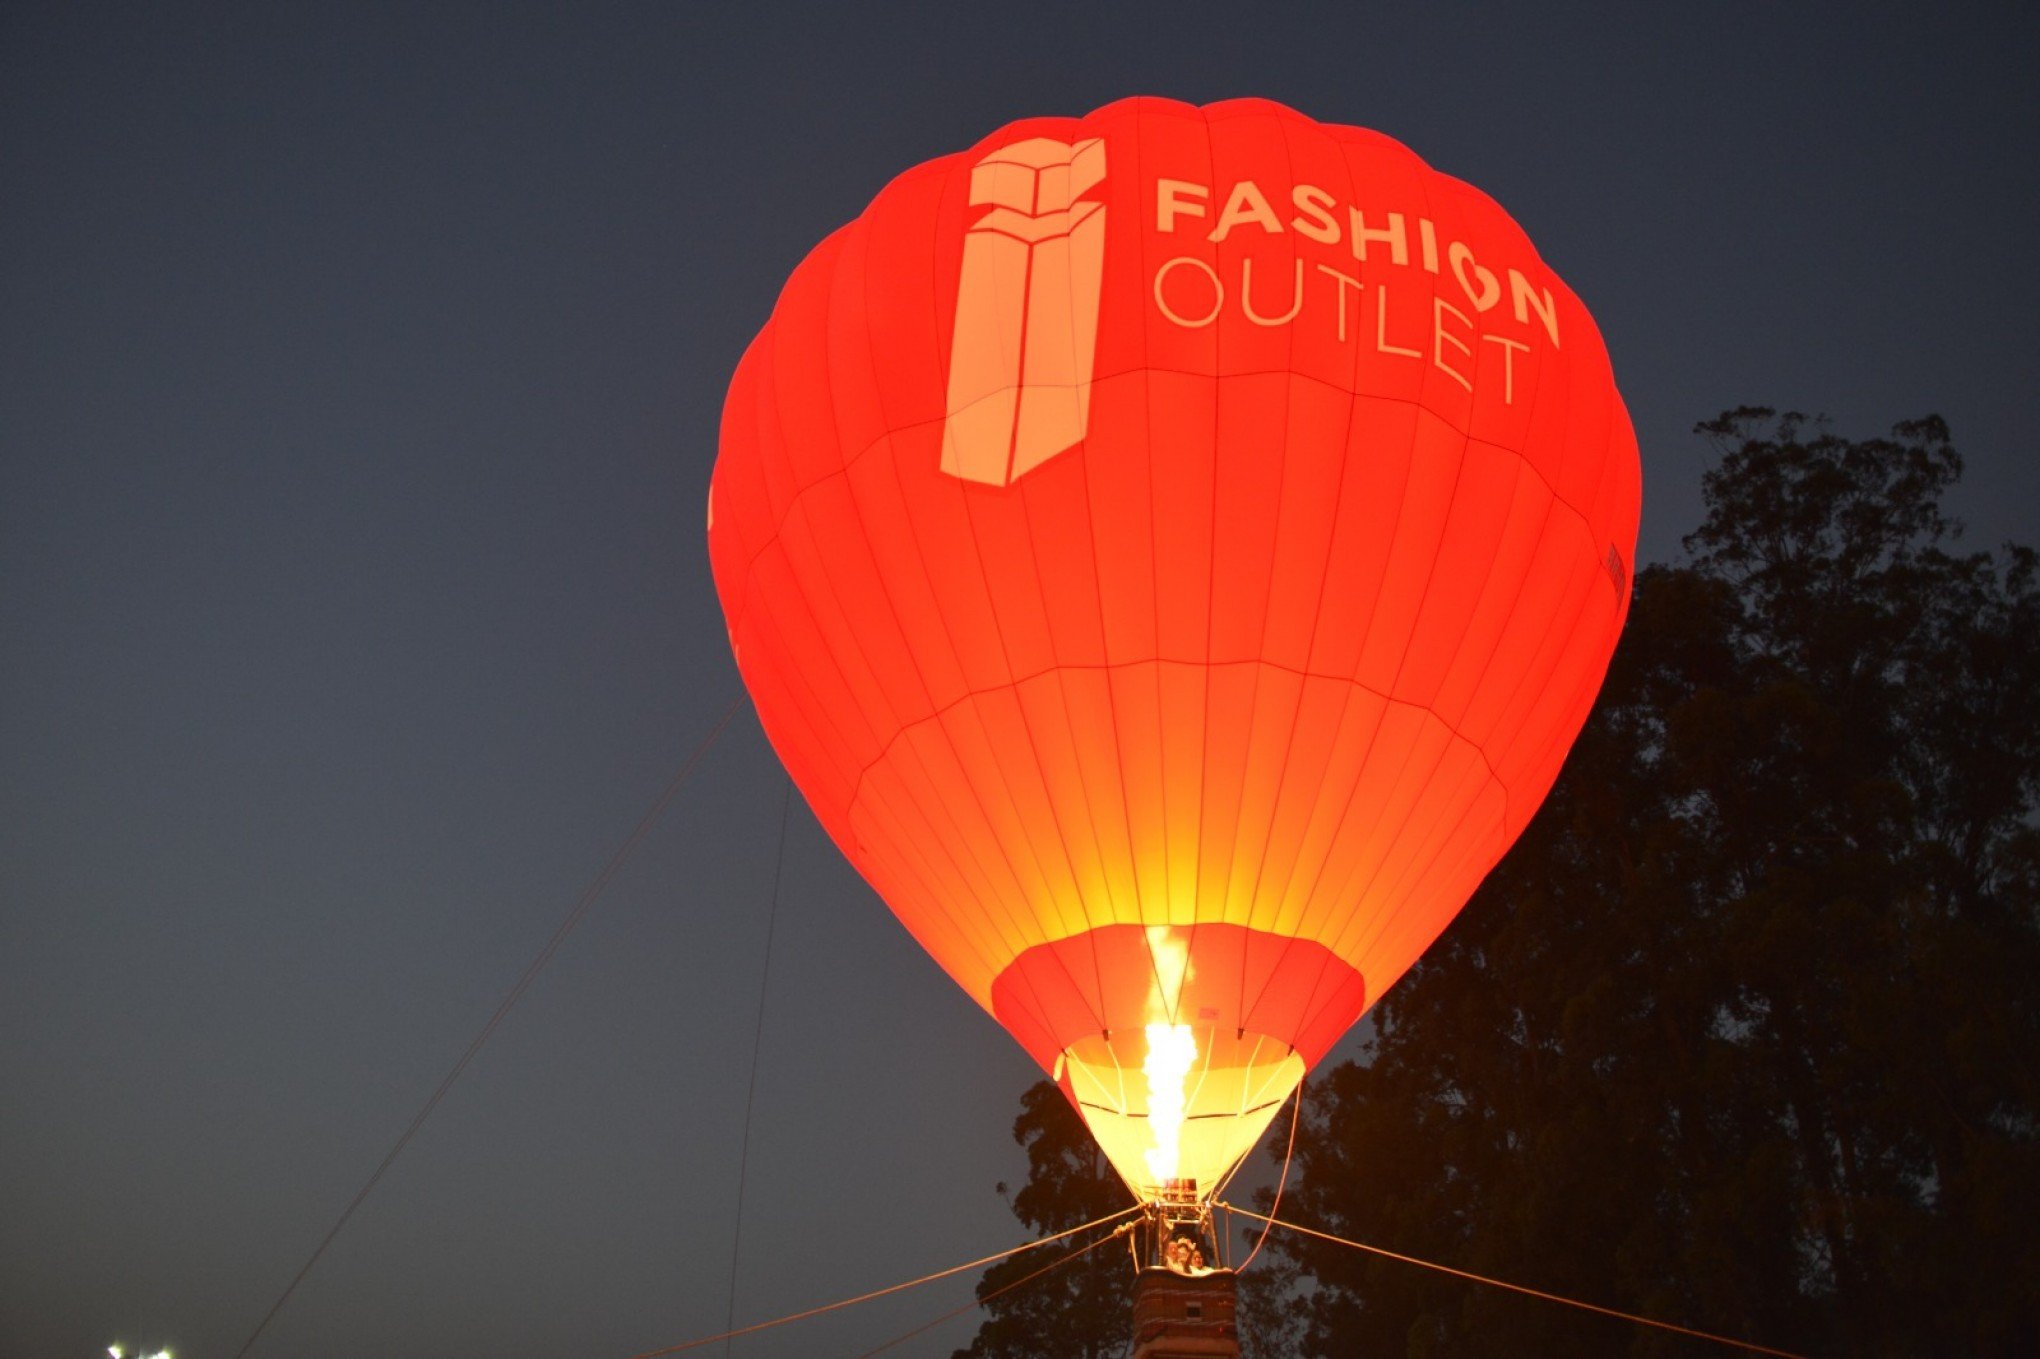 Arraiá Solidário terá "voo" de balão no I Fashion Outlet